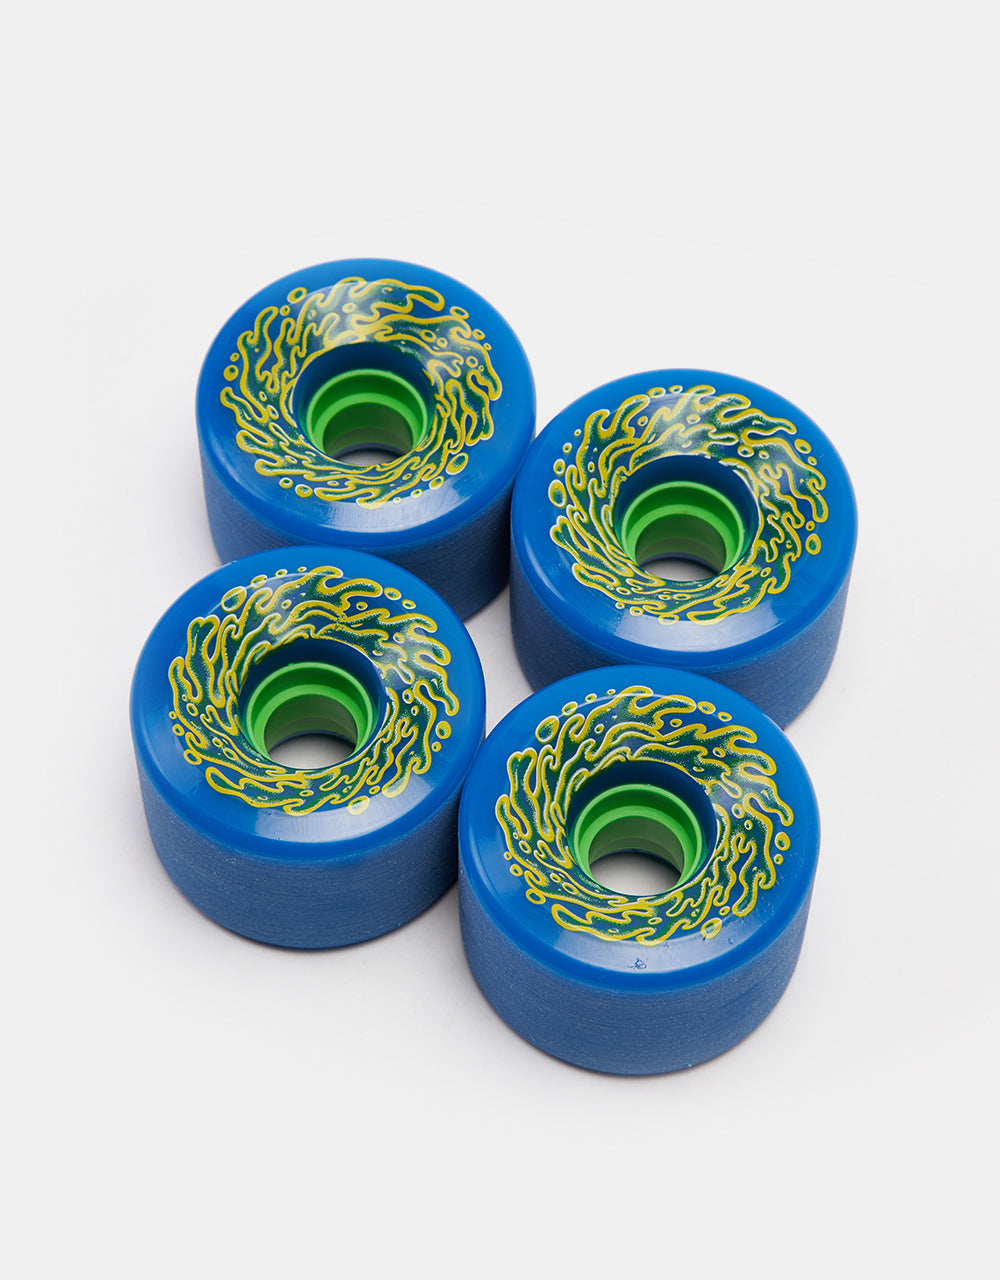 Slime Balls OG Slime 78a Skateboard Wheel - 66mm